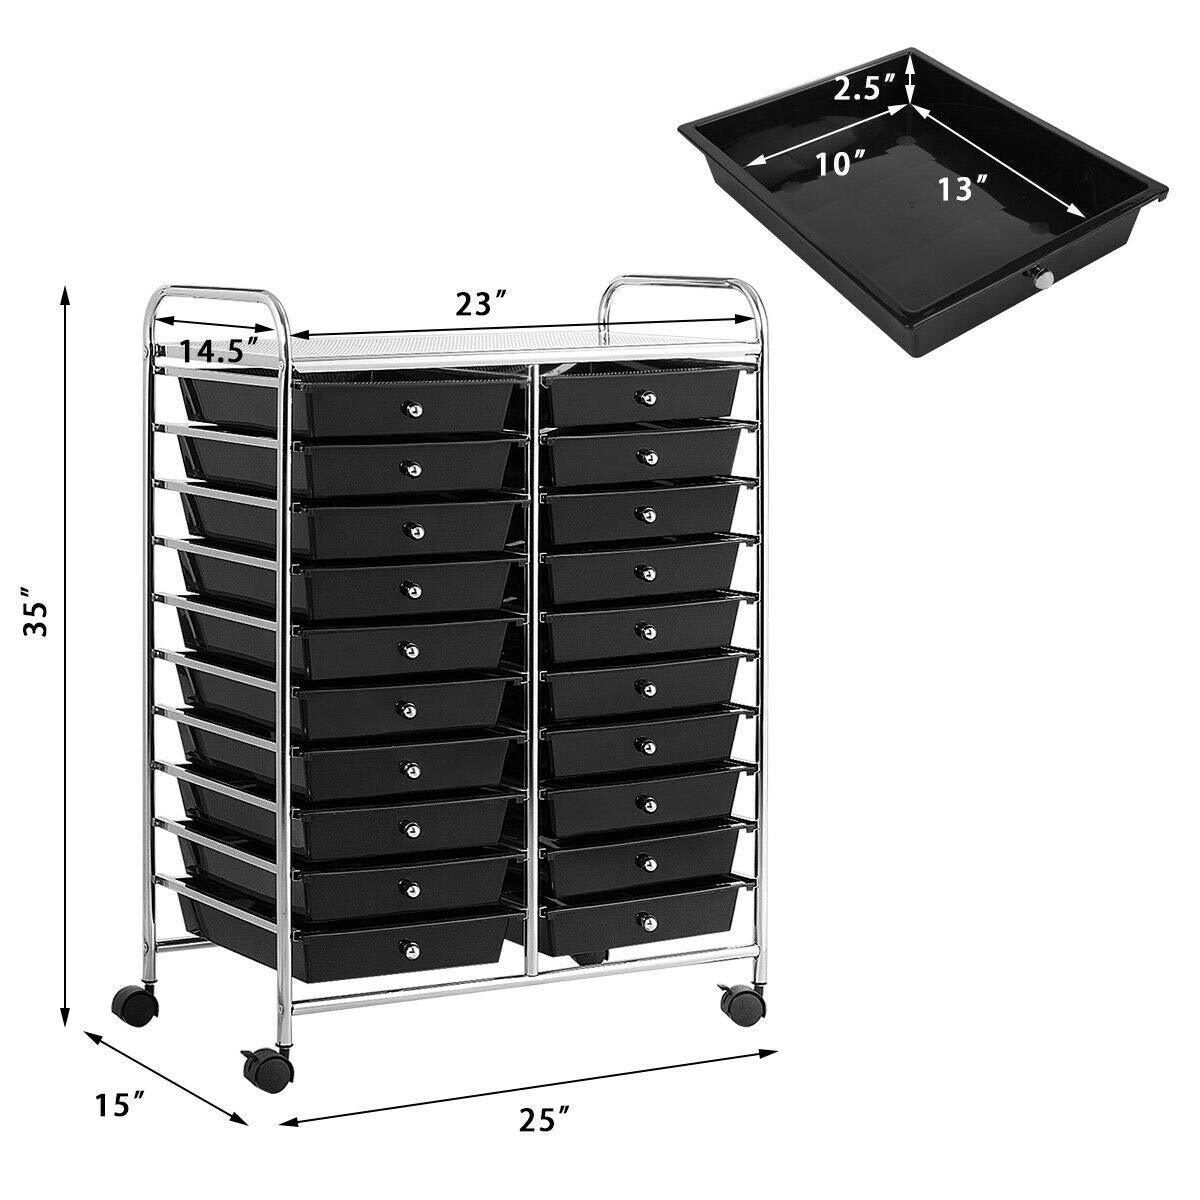 Giantex Storage Drawer Carts, 20-Drawer Organizer, Utility Cart on Wheels